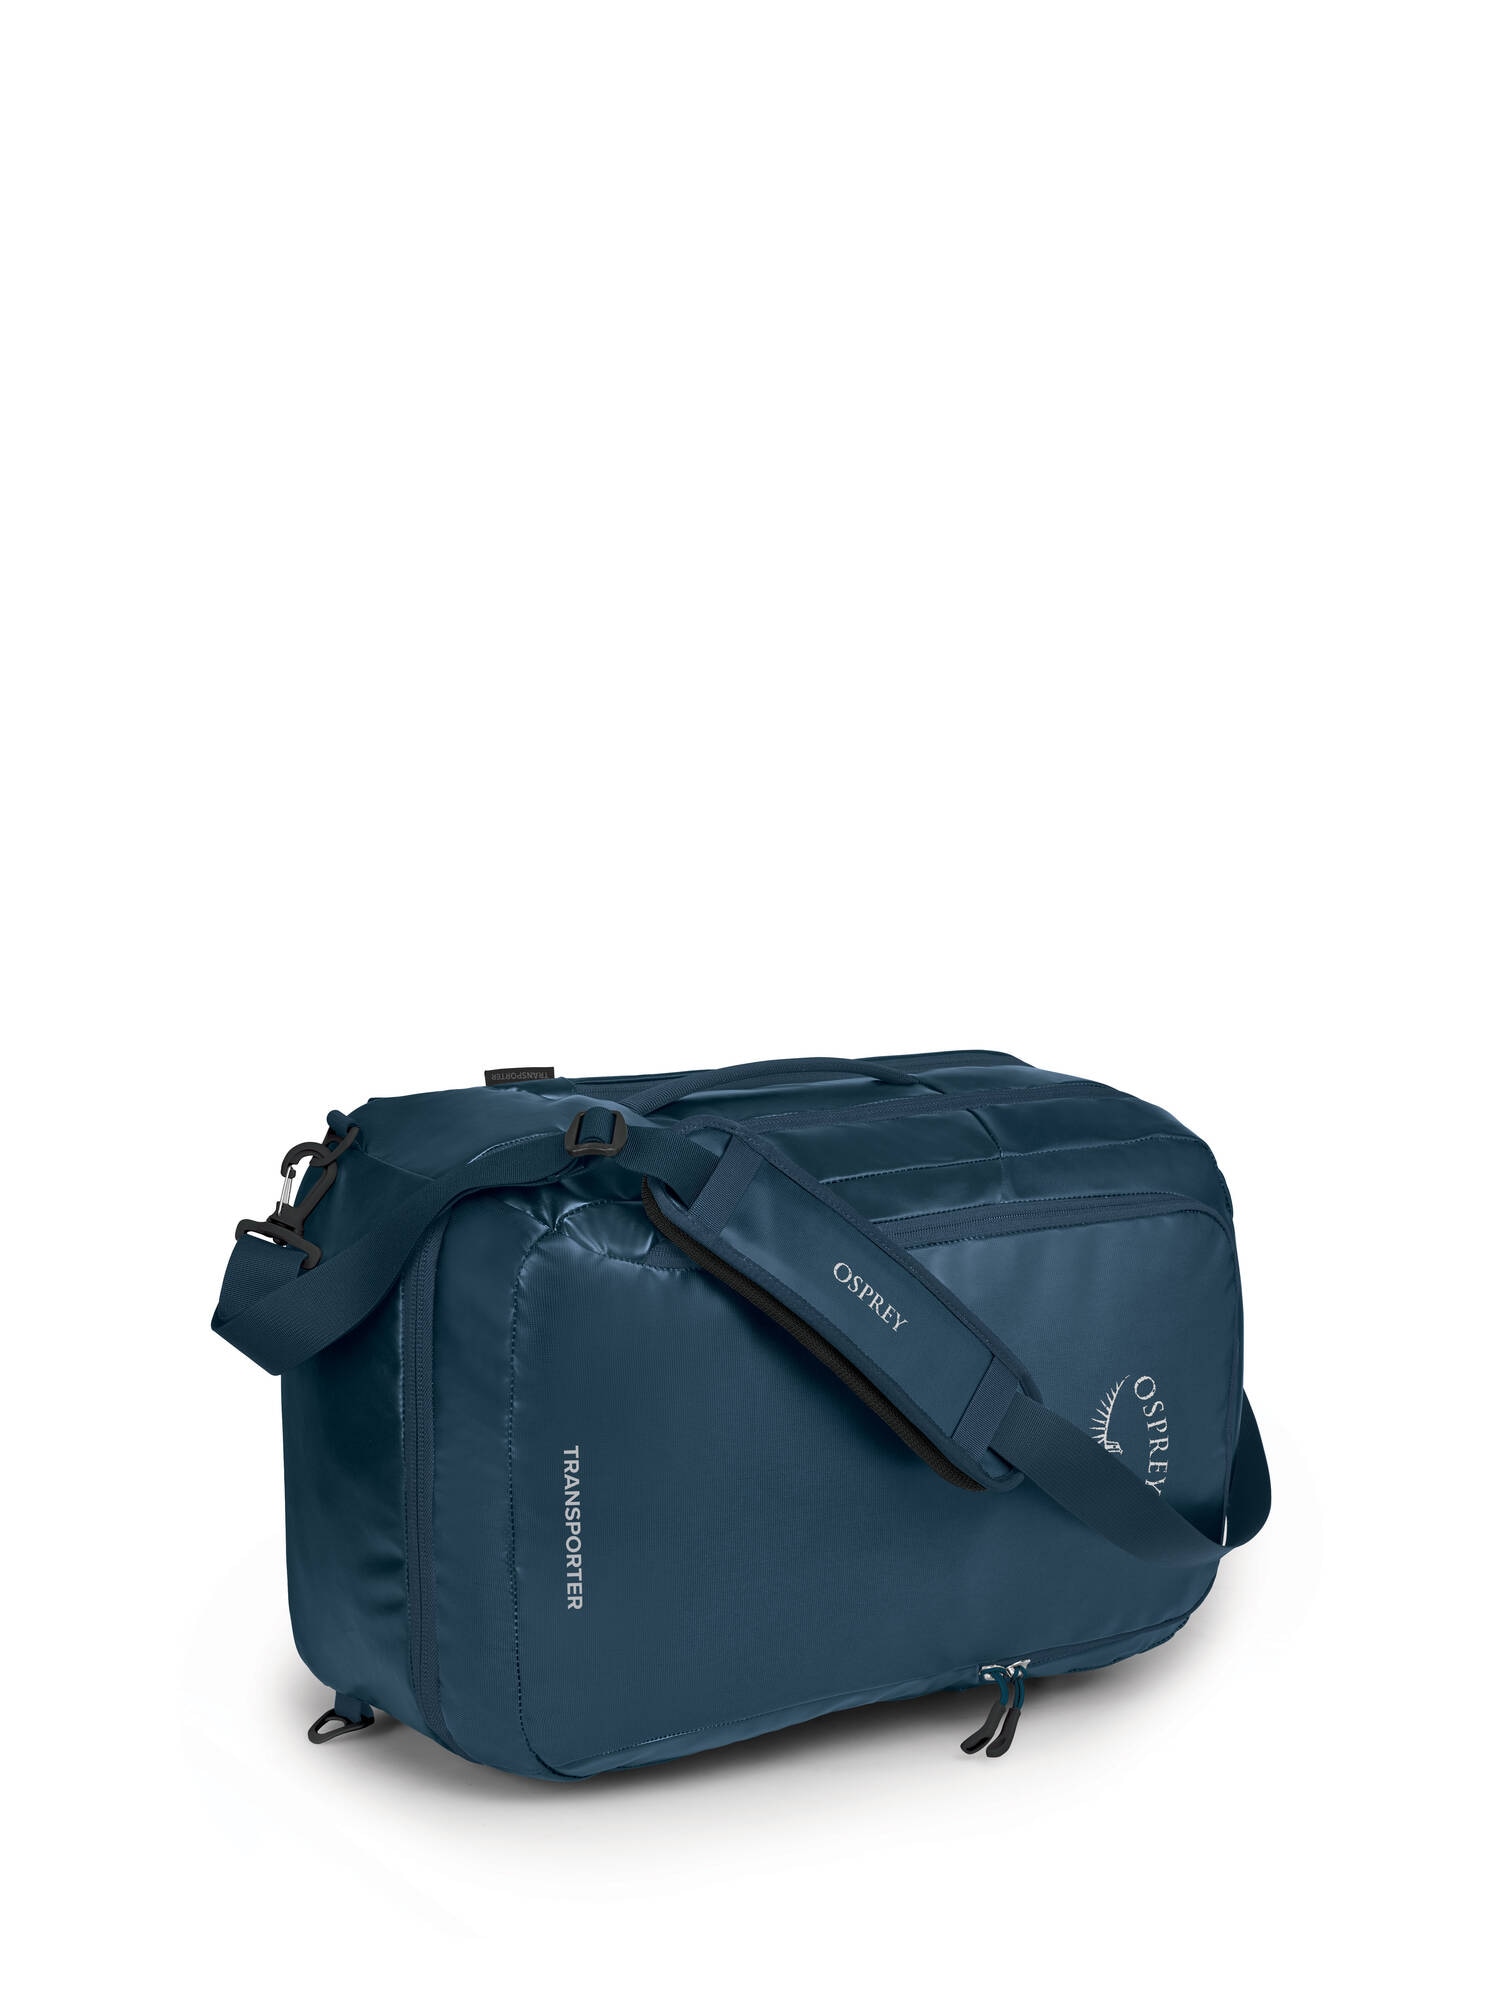 Osprey Transporter Carry-On Bag 44L